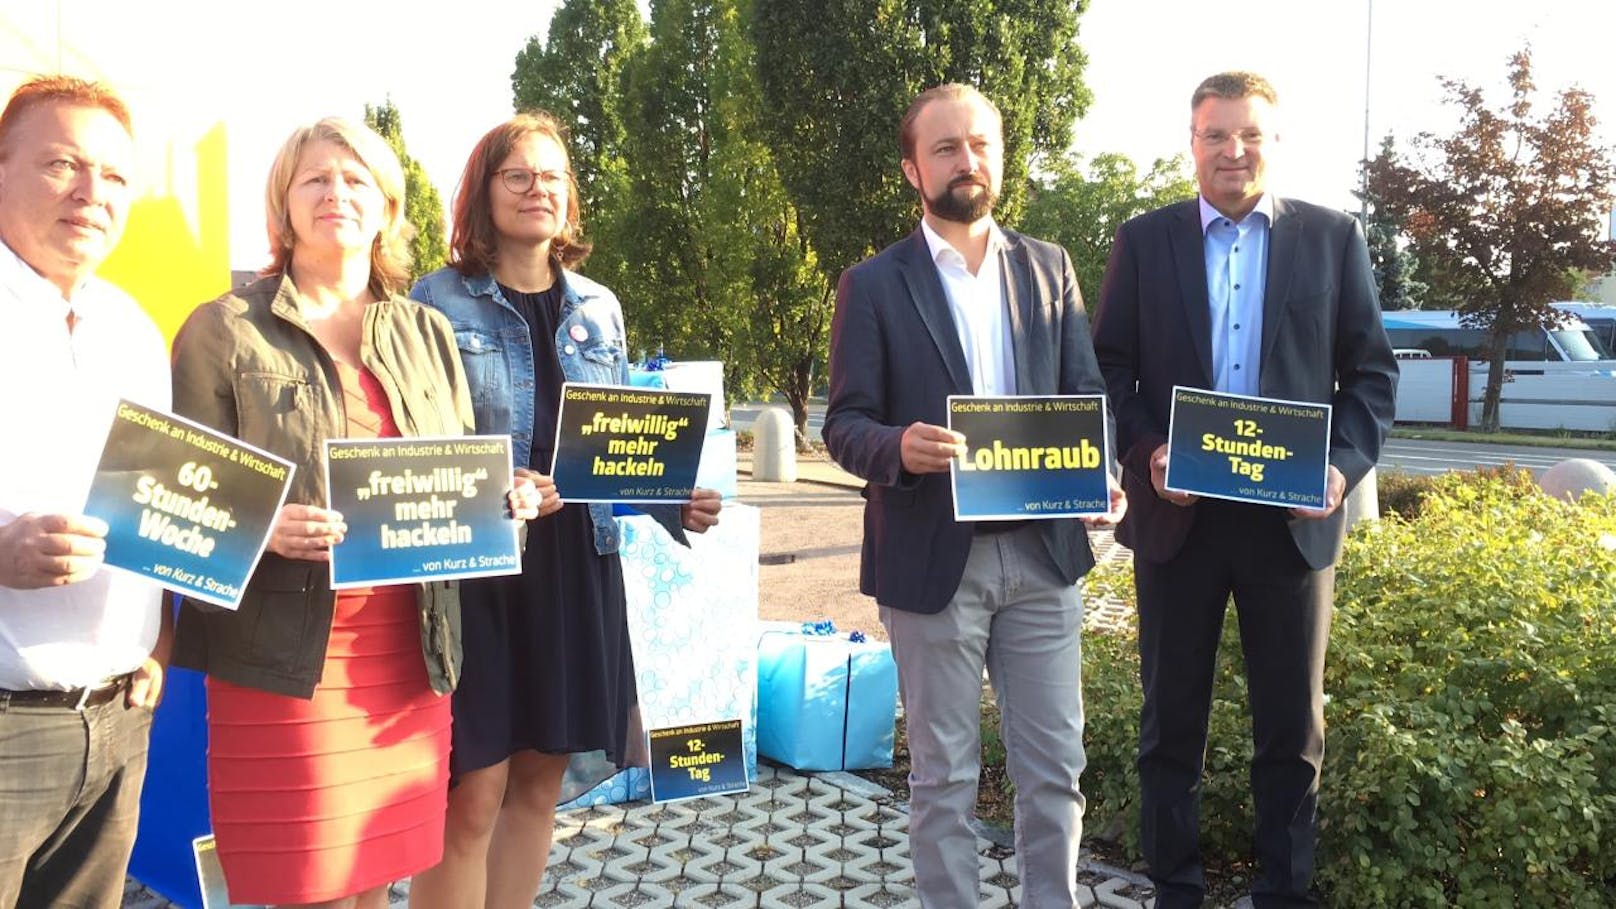 SPÖ-Bundesgeschäftsführer <b>Max Lercher</b>, die Geschäftsführerin der Bundesfrauen<b> Andrea Brunner </b>und der SPÖ-NÖ-Landesgeschäftsführer <b>Wolfgang Kocevar </b>protestieren vor KTM-Filiale in Vösendorf gegen 12-Stunden-Tag (31. August 2018).